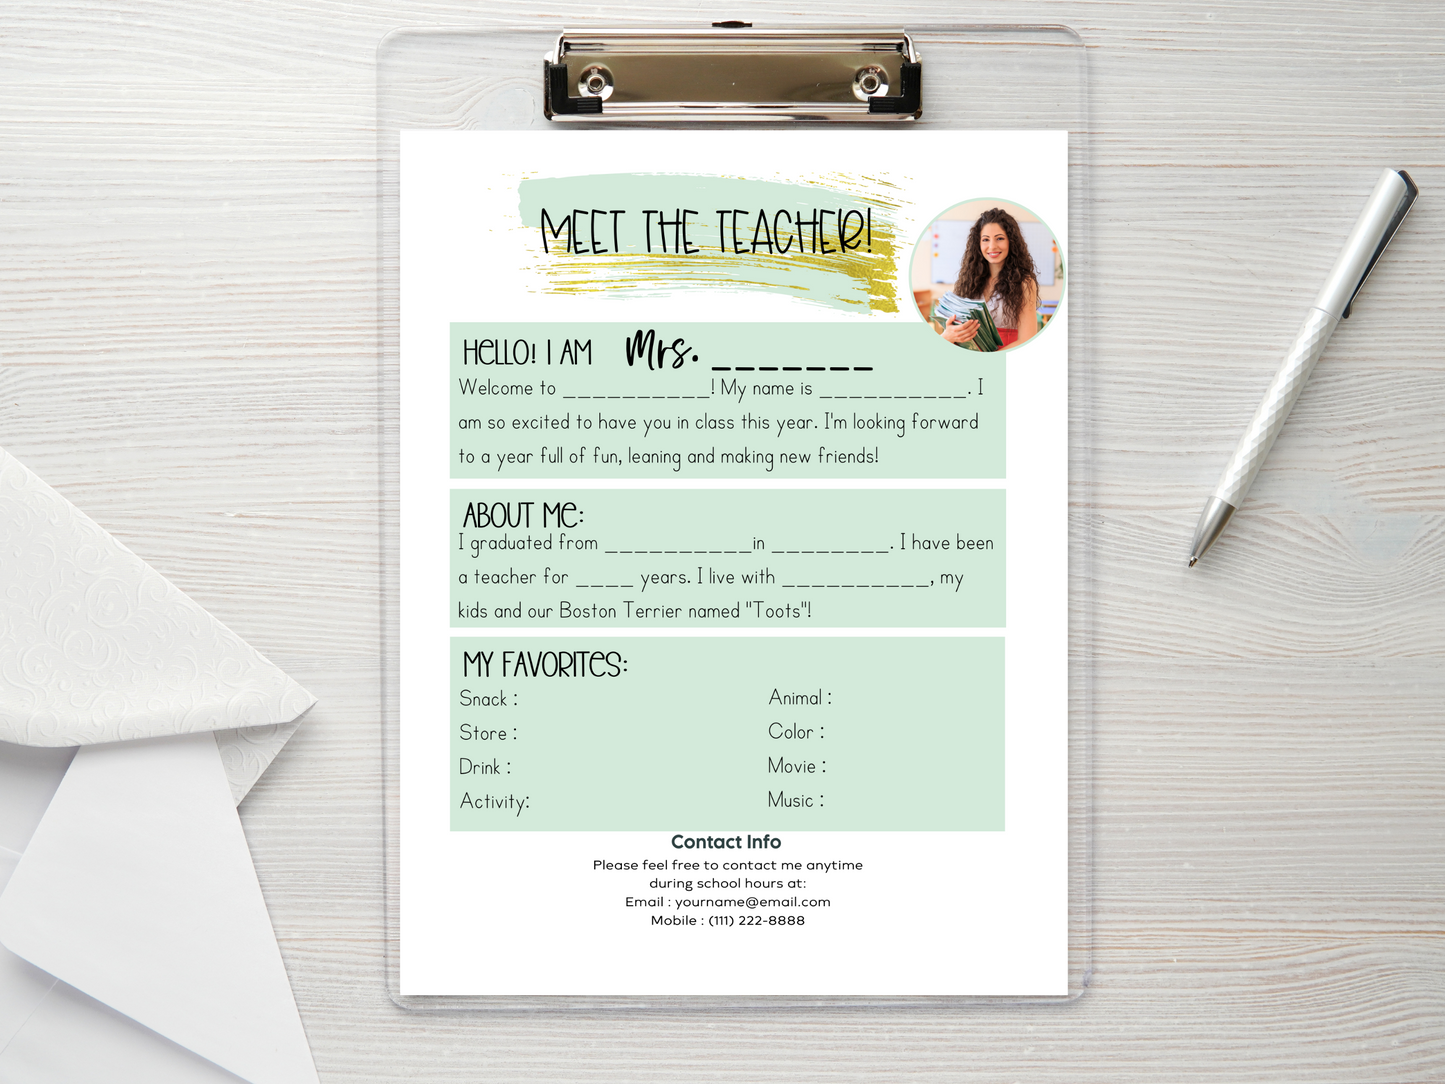 Meet the Teacher Letter Template - Mint